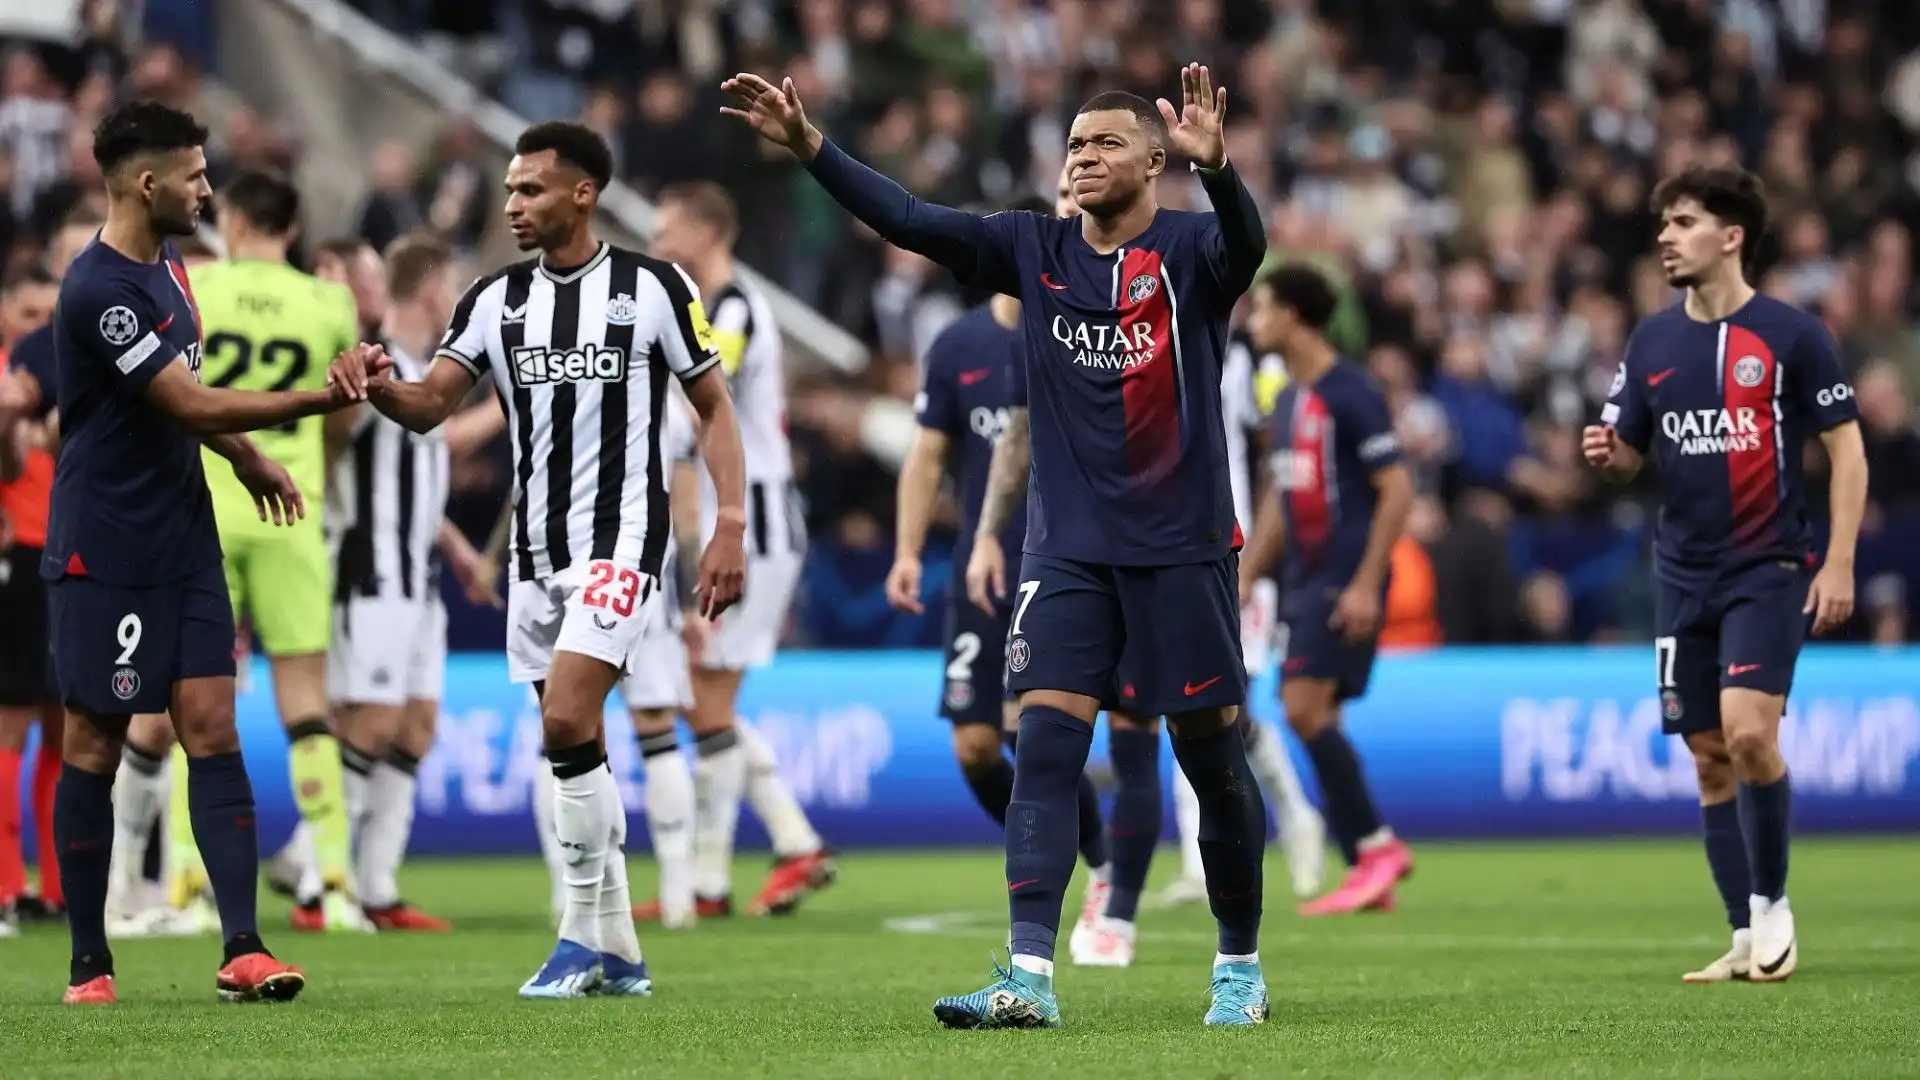 Al termine della partita contro il Newcastle, il campione si è scusato con i tifosi francesi